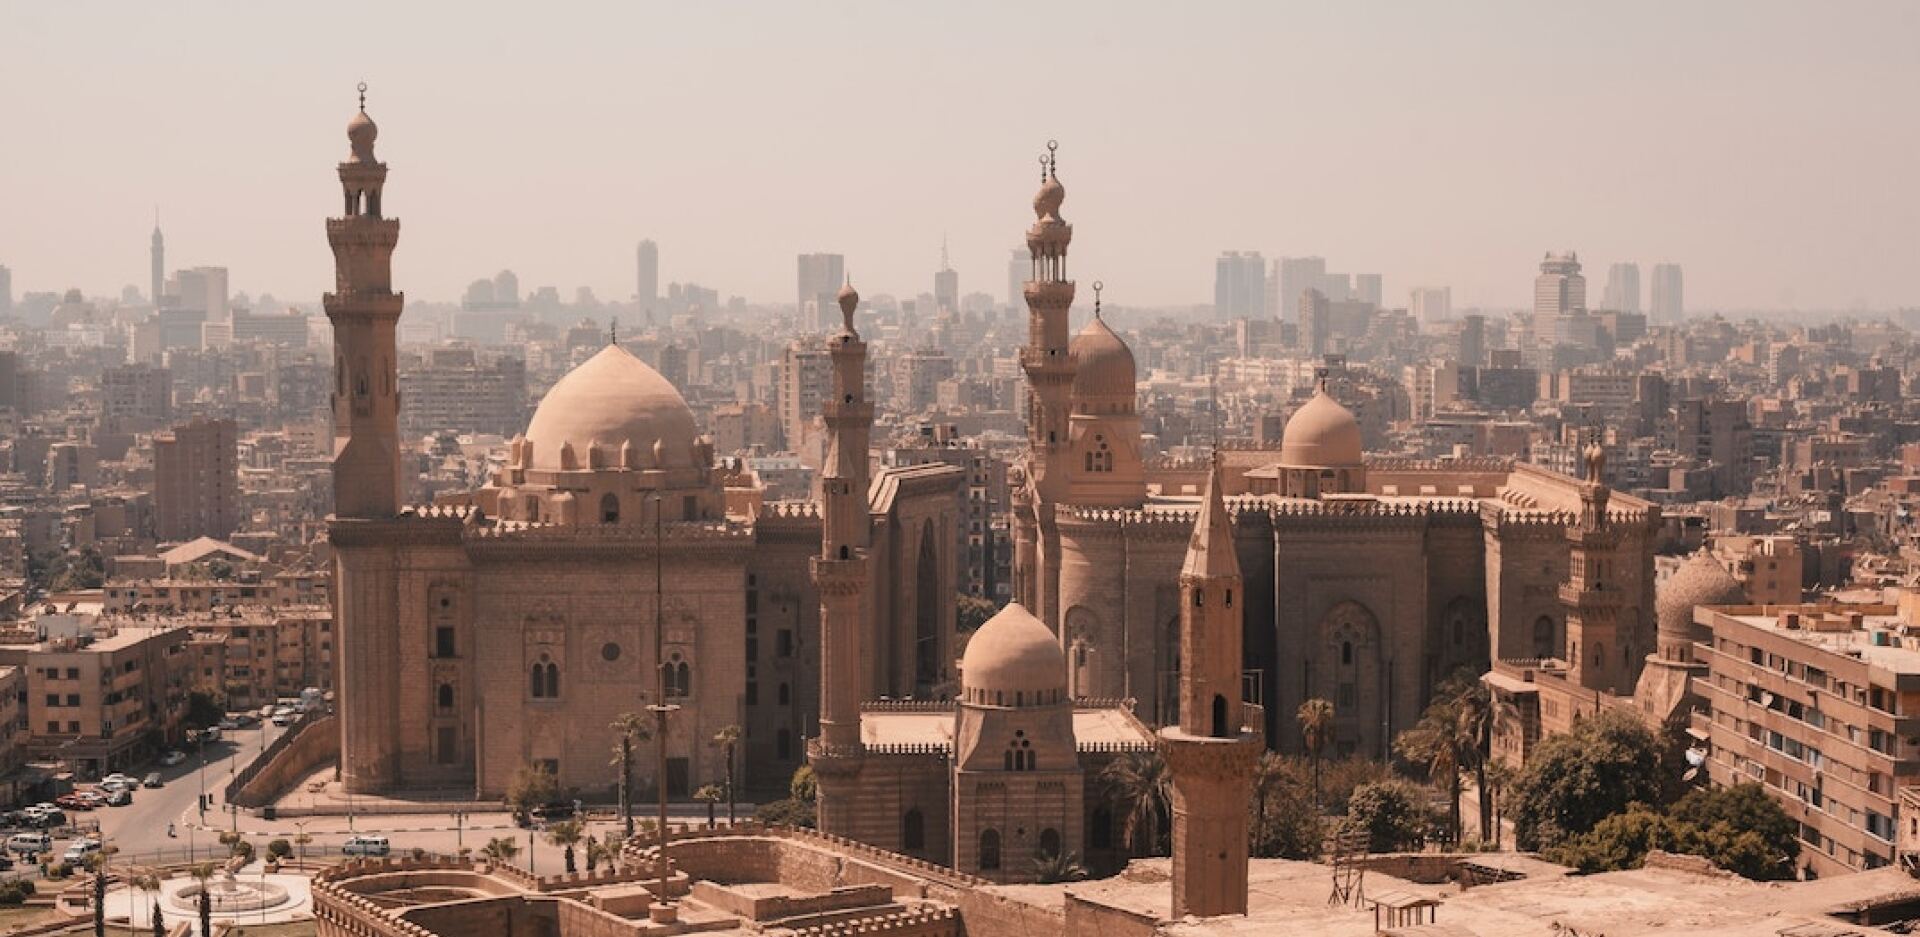 Αίγυπτος: Η ιστορία, το Κάιρο, ο Νείλος, οι πυραμίδες, οι τάφοι, οι ναοί, οι γεύσεις, η καθημερινότητα, οι άνθρωποι